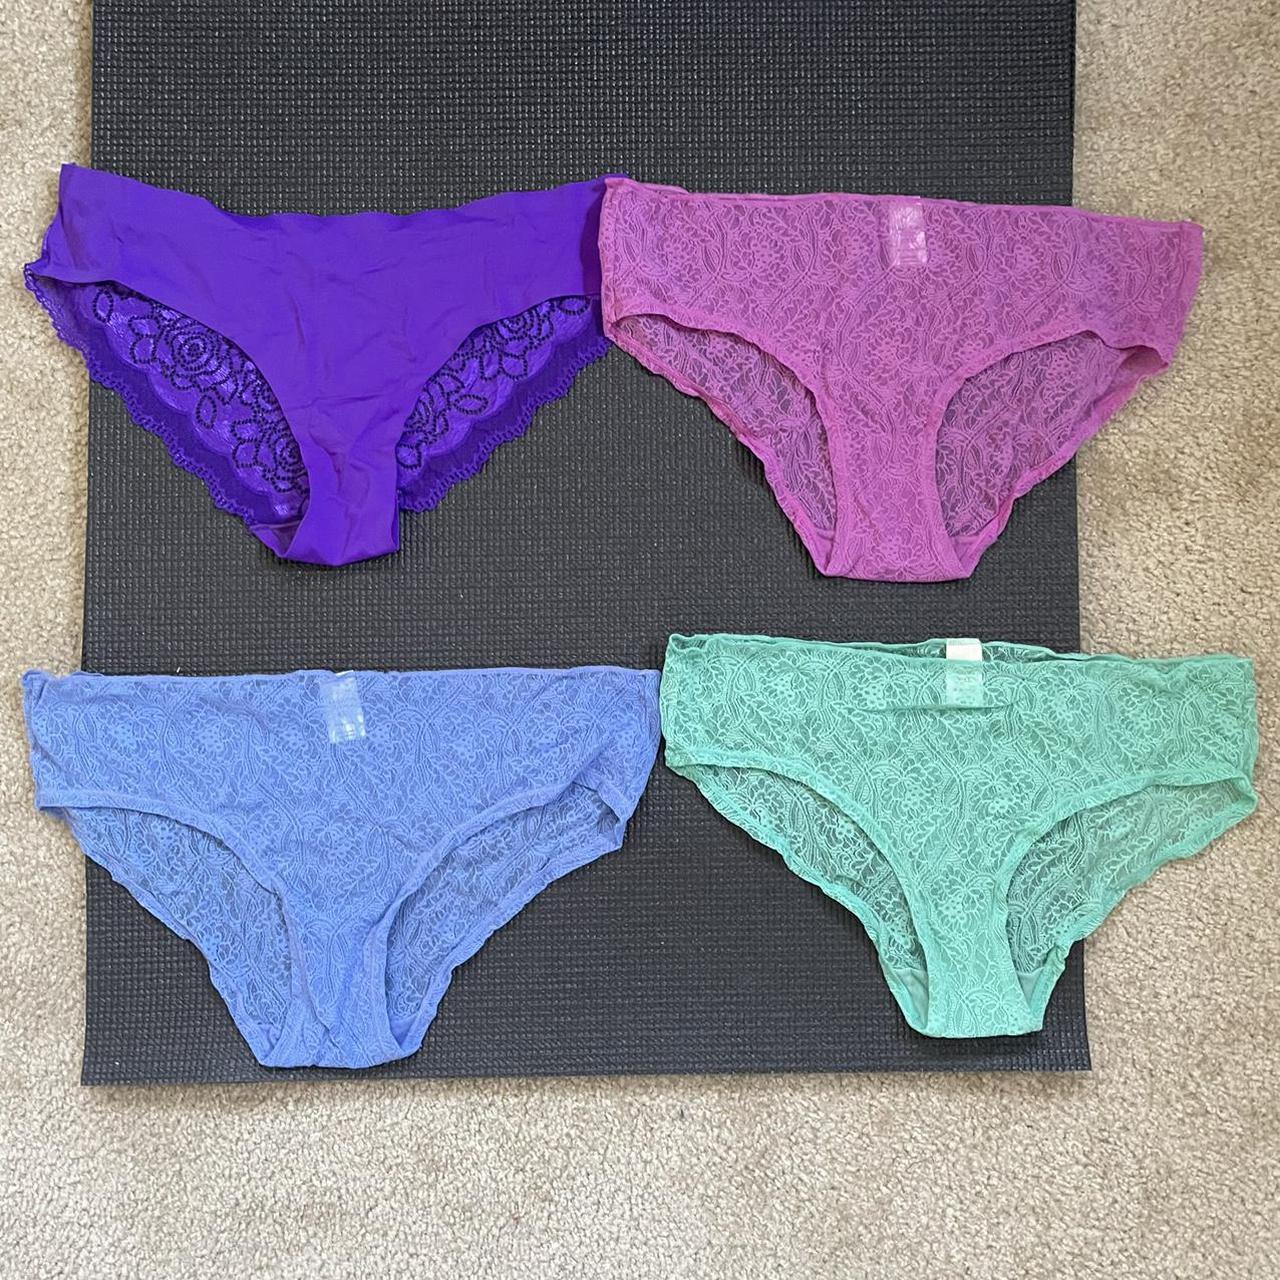 Set / lot / bundle 4 pairs of panties underwear... - Depop